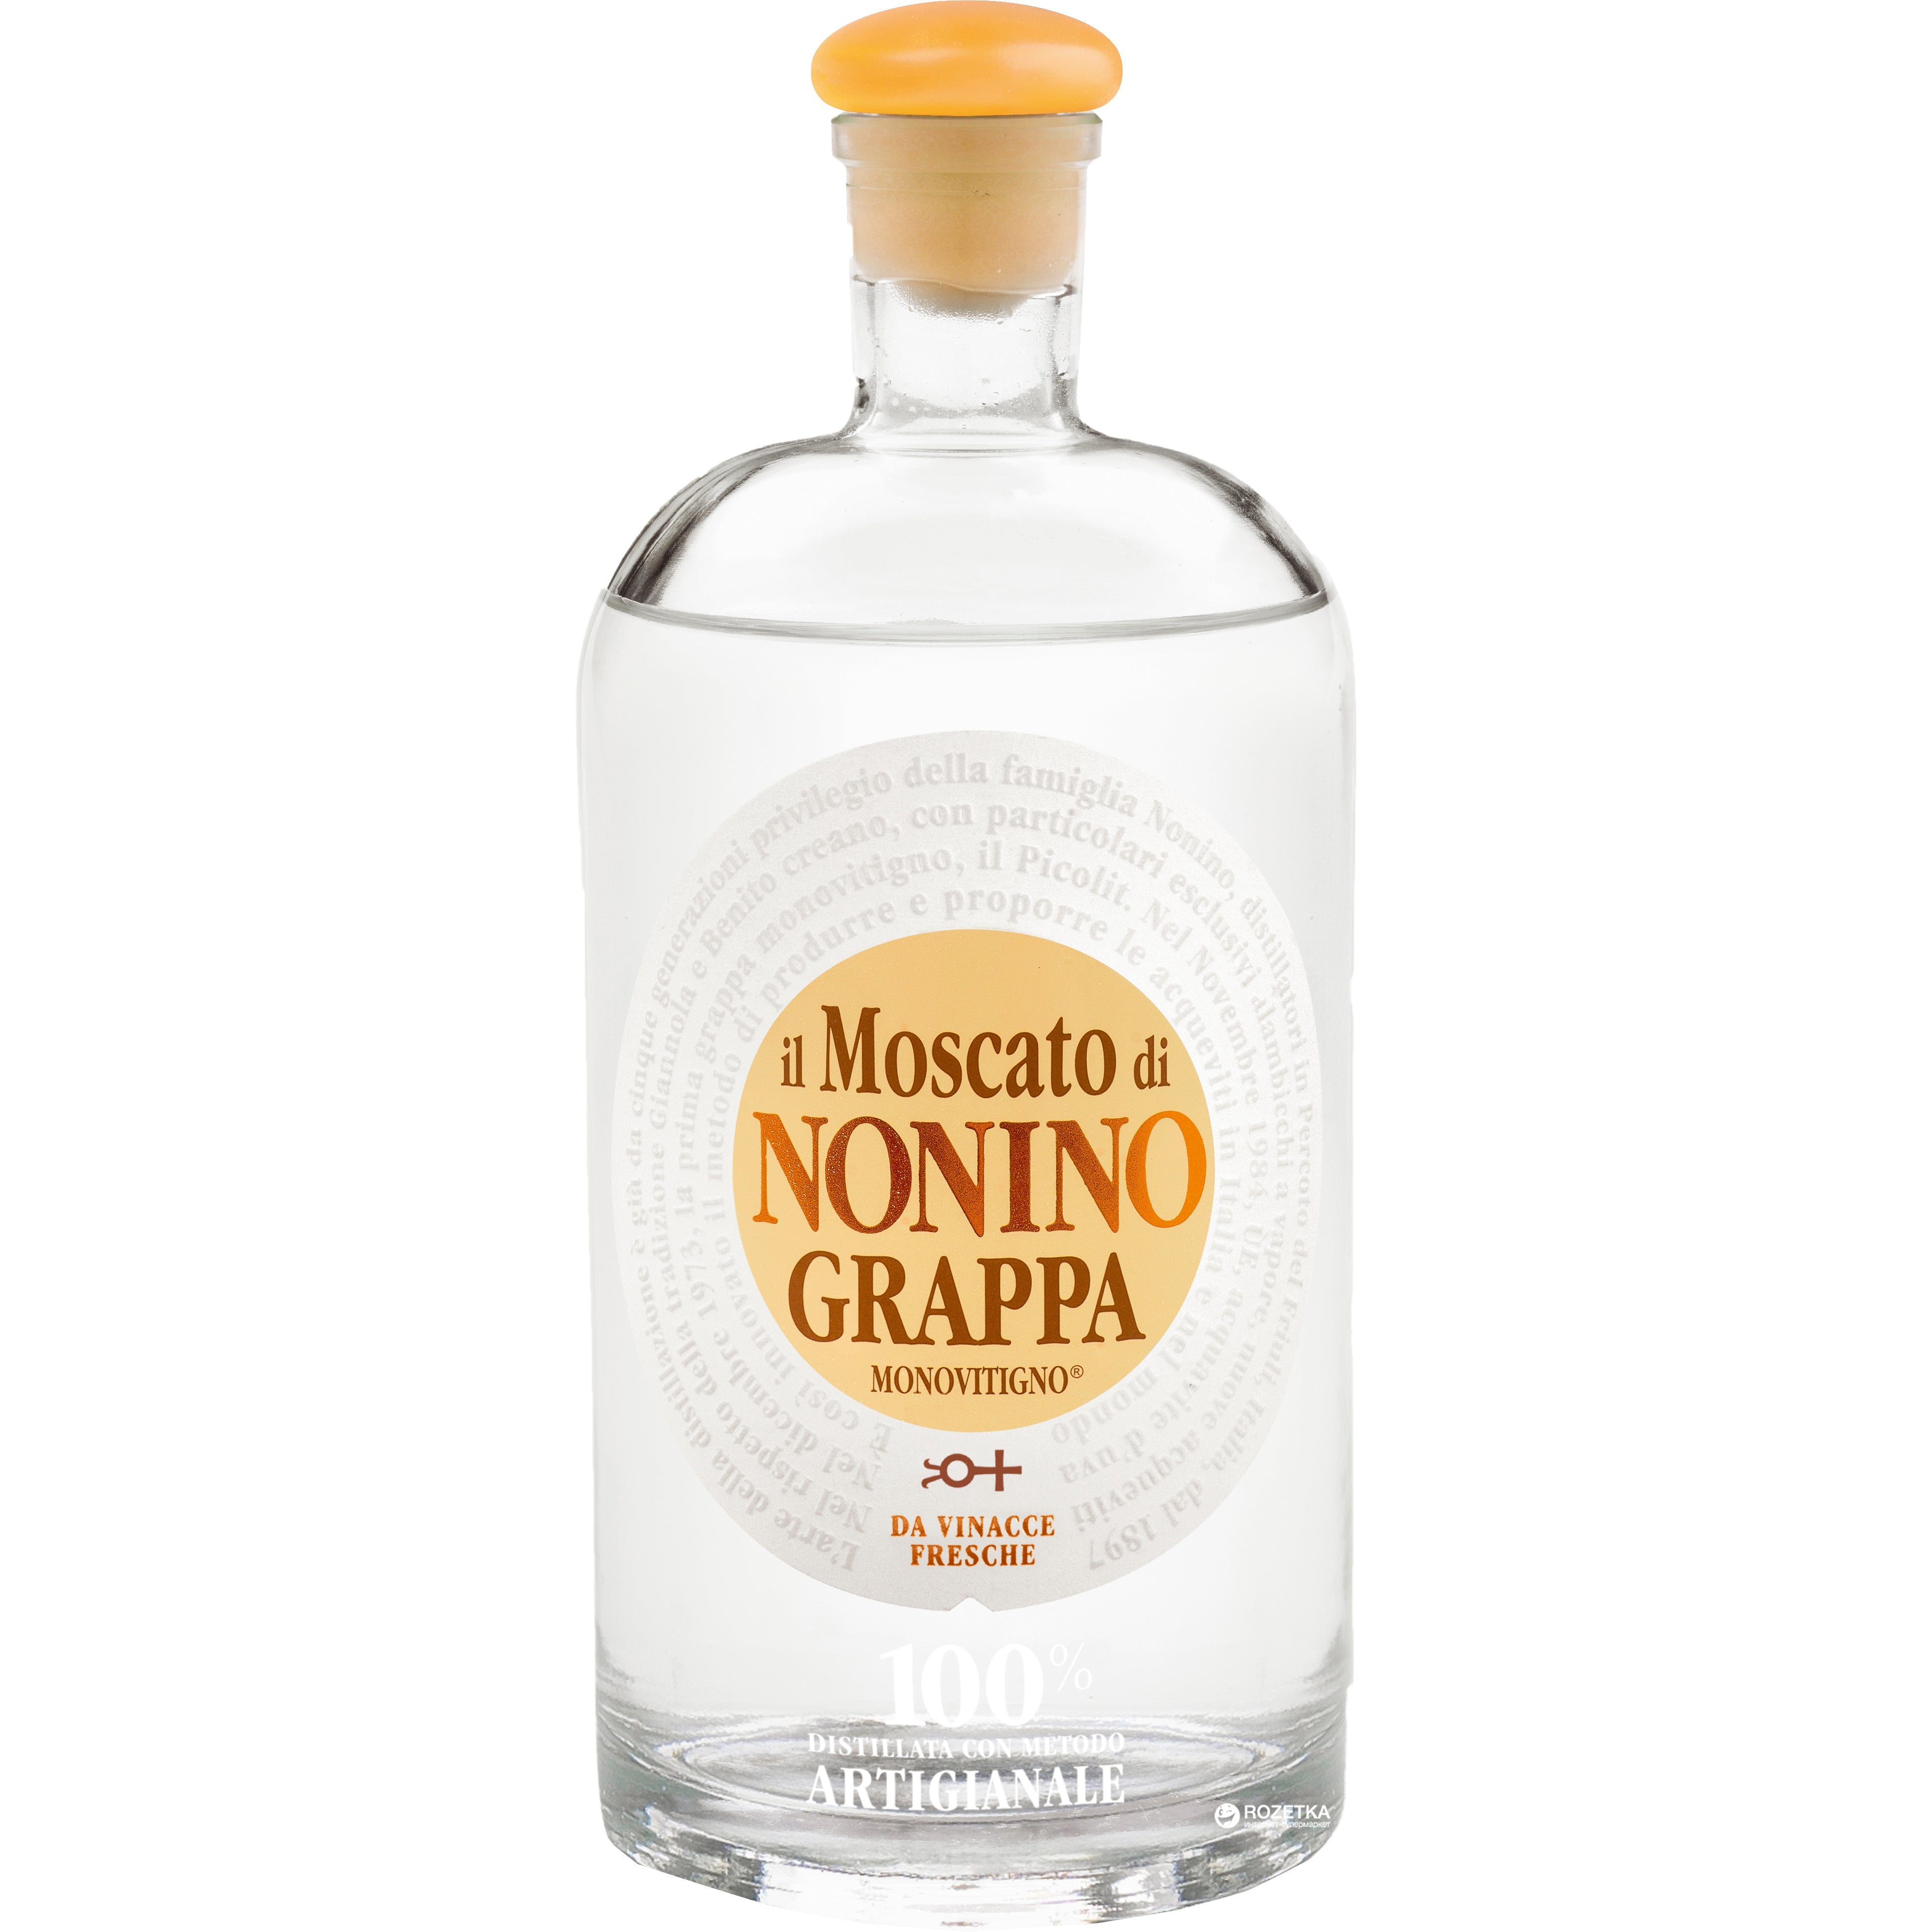 Nonino Grappa Monovitigno il Moscato 41% Vol. 0,7l in Giftbox